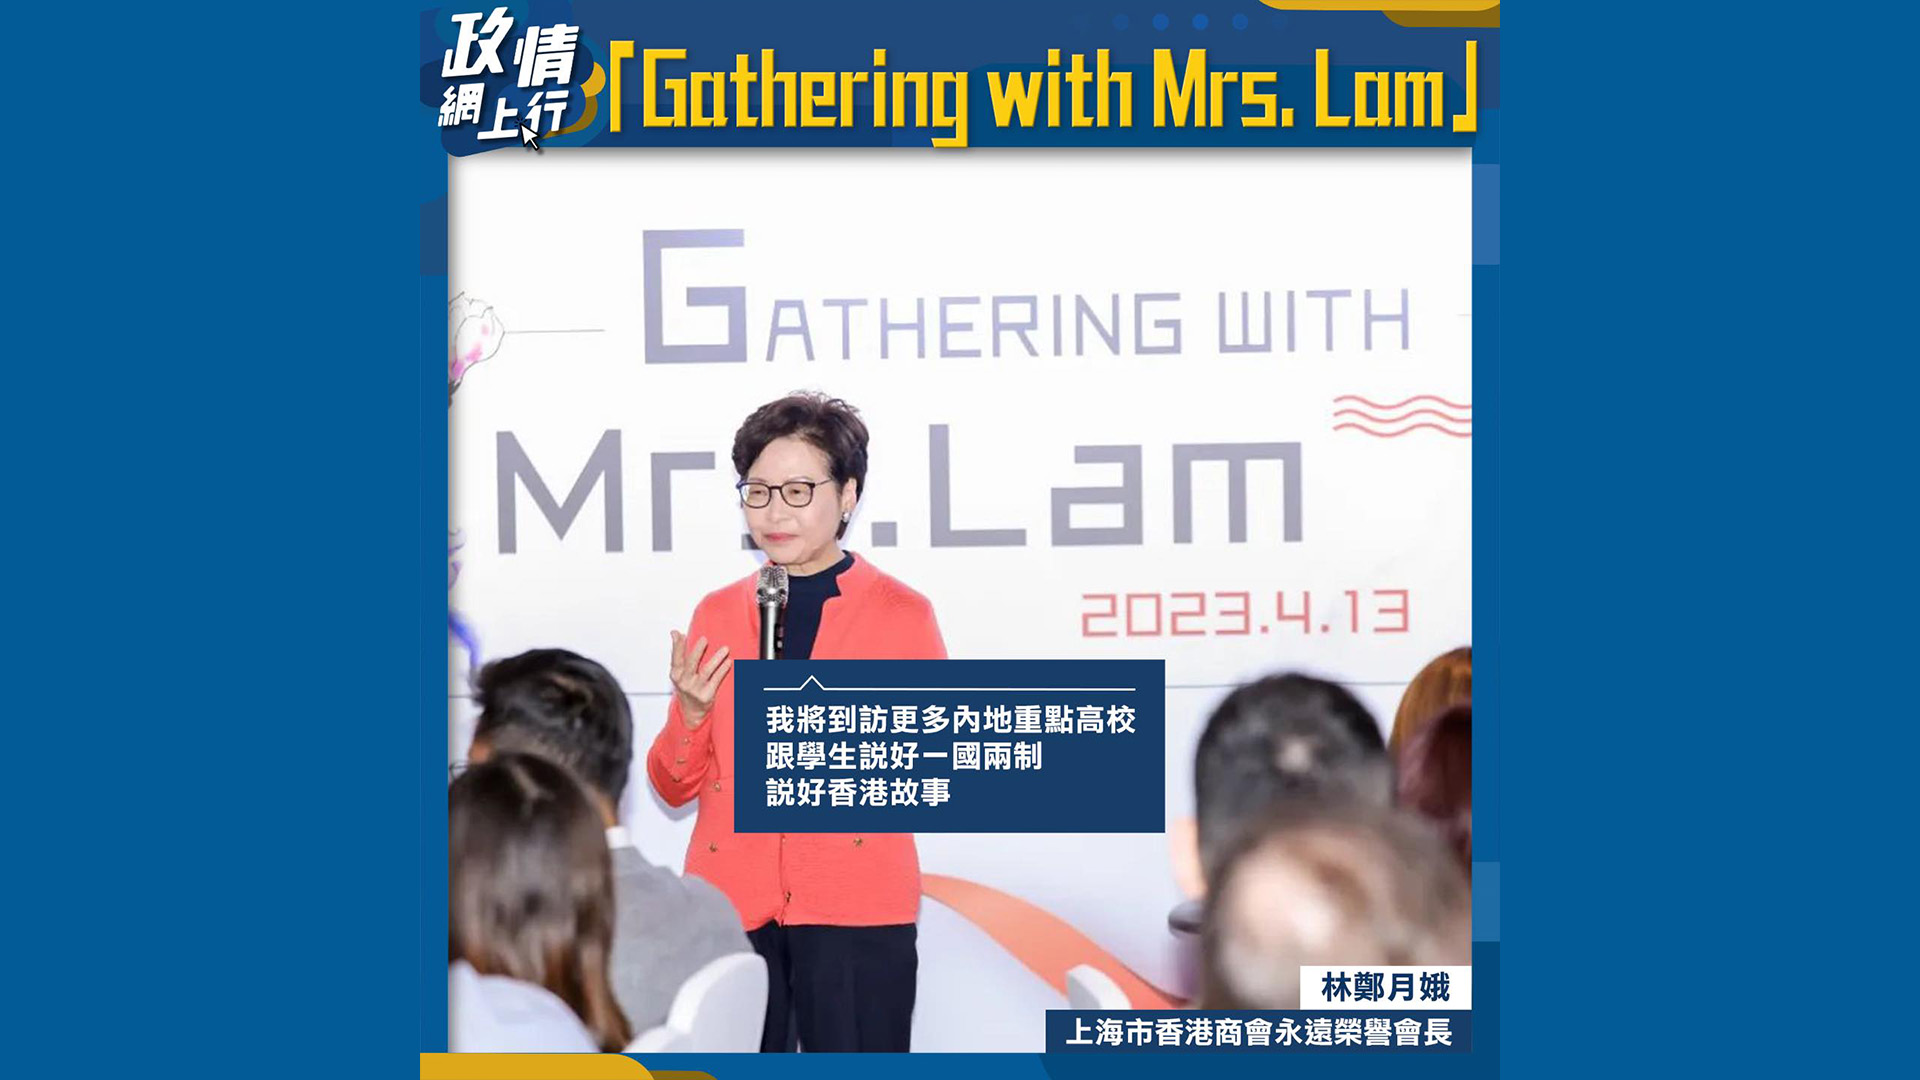 【政情網上行】Gathering with Mrs. Lam